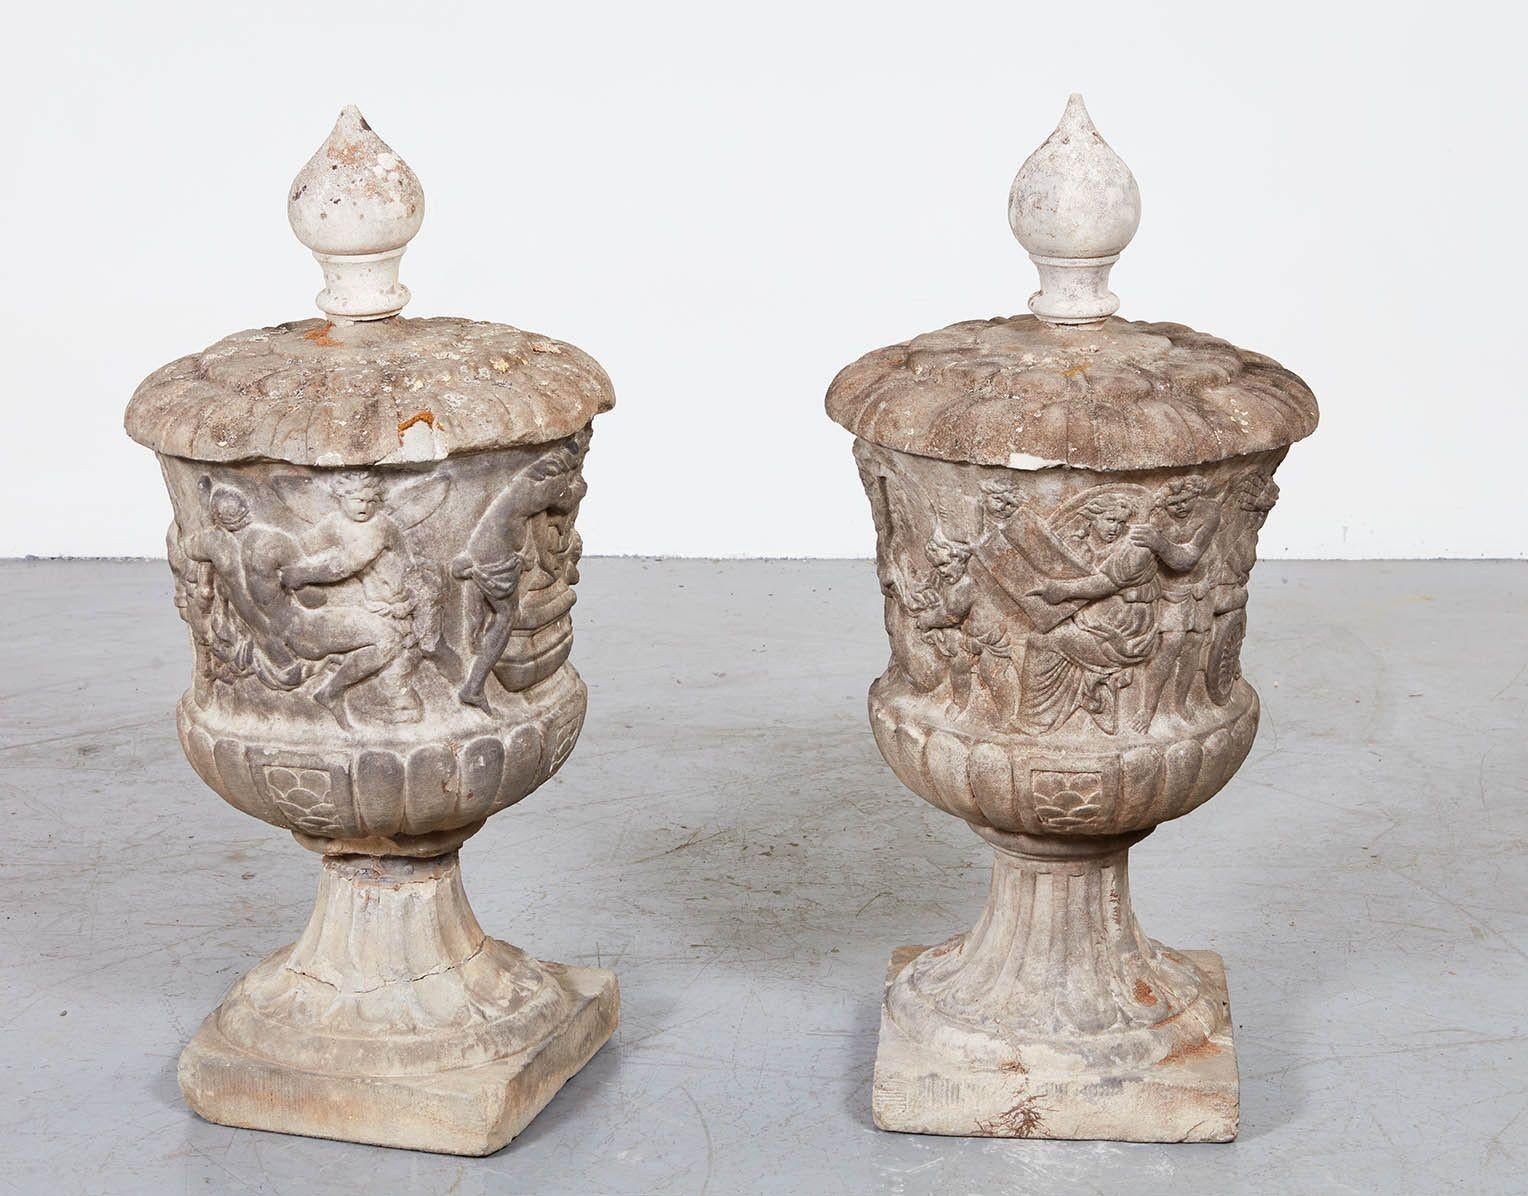 Rare et importante paire d'urnes en marbre du XVIIe siècle provenant de l'atelier de Jan Pieter Van Baurscheit (1649-1728). Le corps est sculpté de scènes mythologiques en bas-relief avec des sculptures de jardinage et d'échelle sur une base carrée,